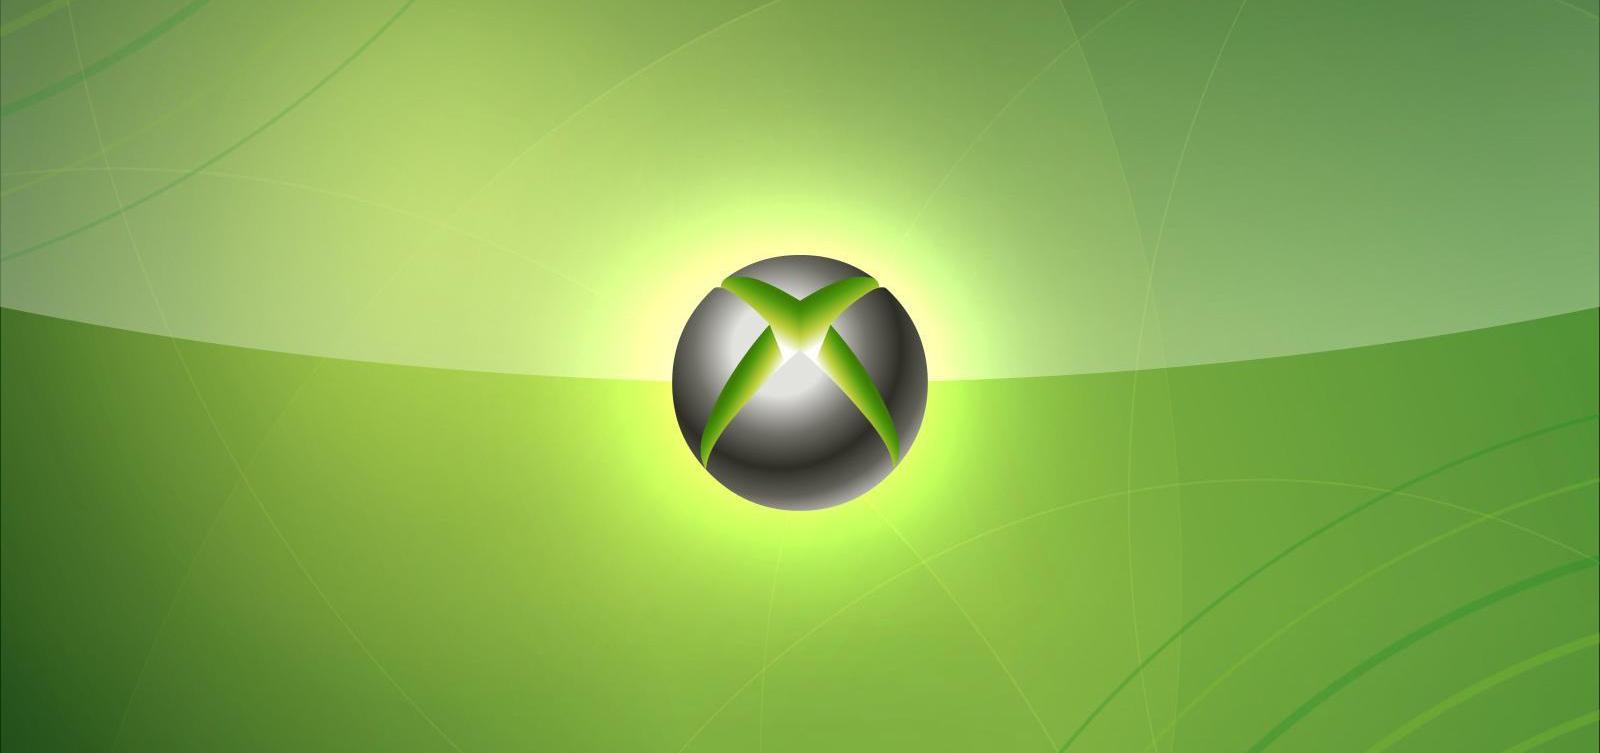 Xbox-360-HD-Wallpaper1.jpg